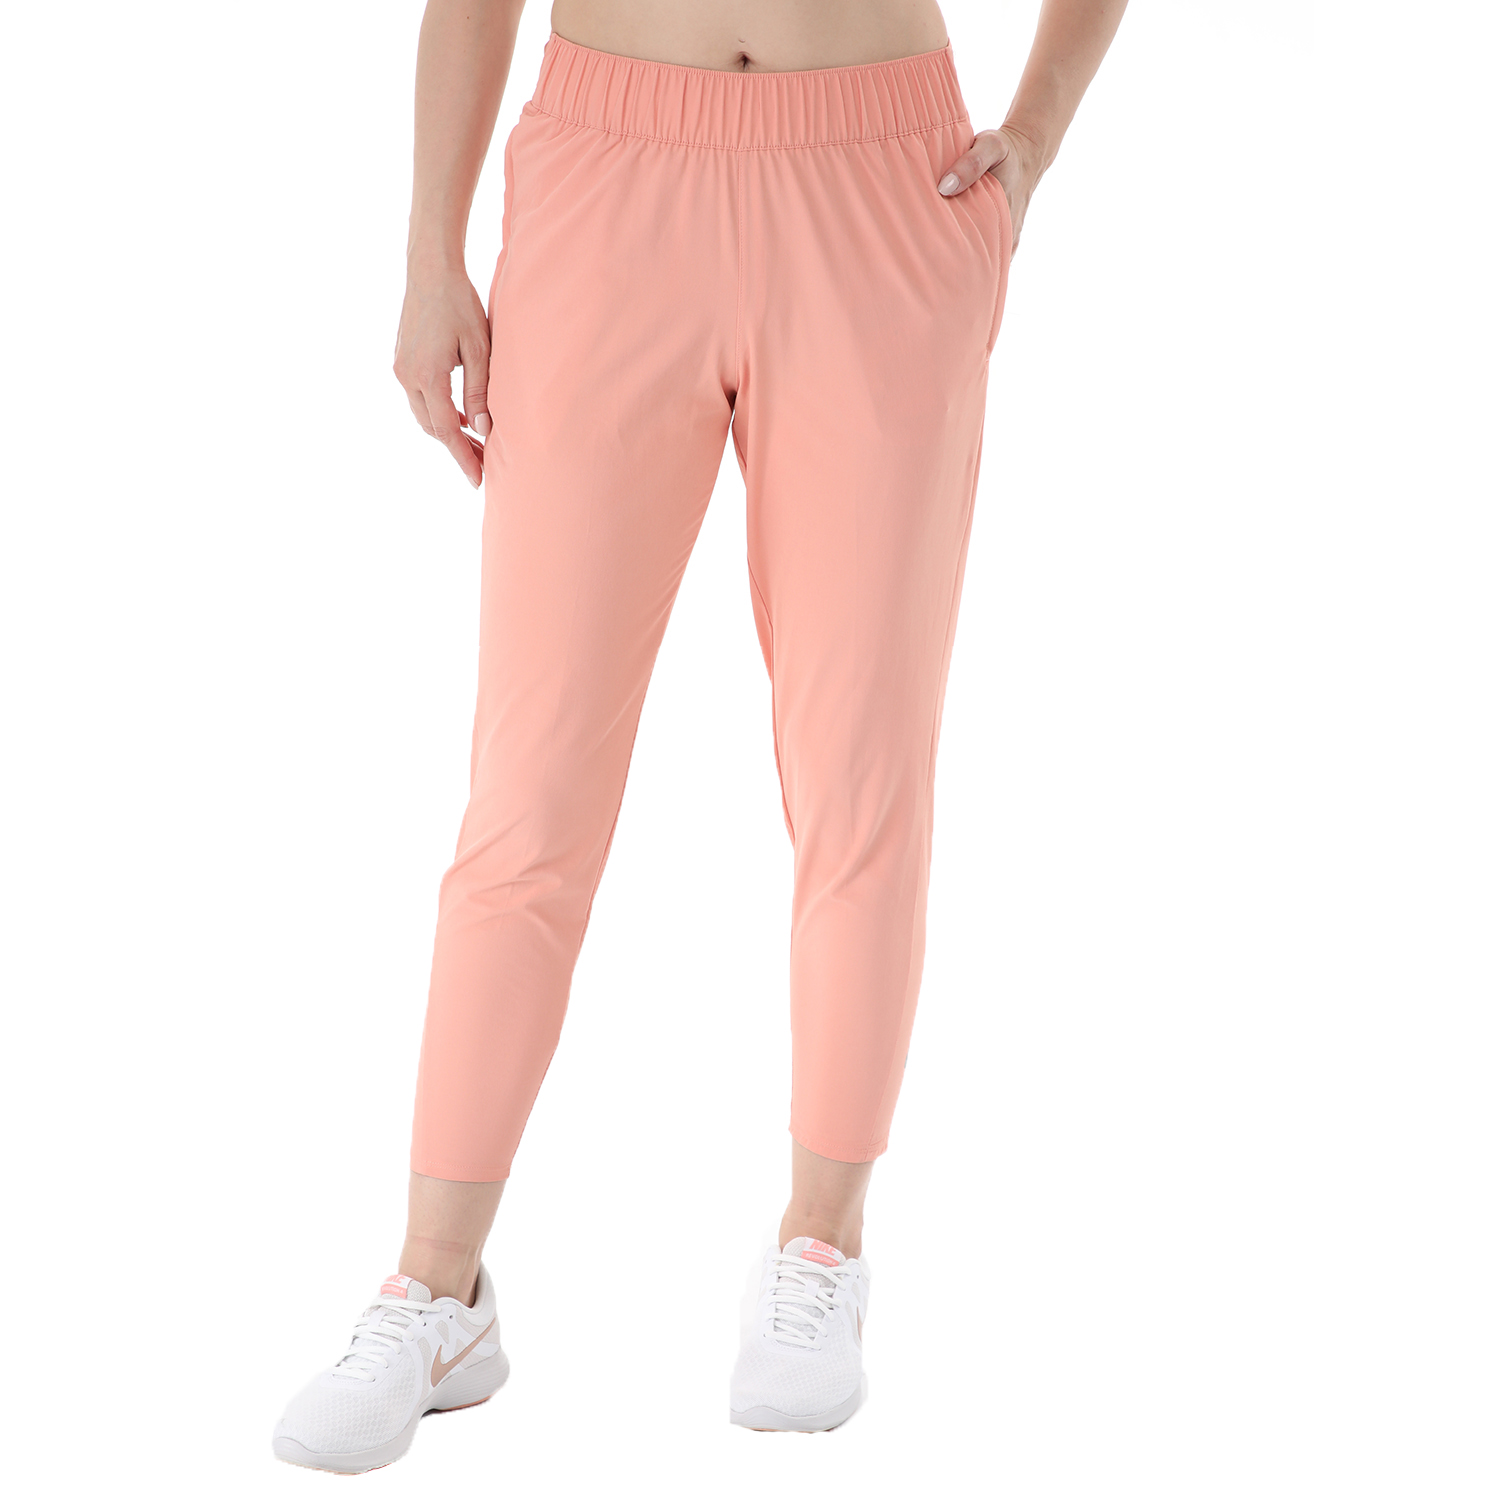 Γυναικεία/Ρούχα/Αθλητικά/Φόρμες NIKE - Γυναικείο παντελόνι φόρμας Nike NK ESSNTL PANT 7_8 ροζ